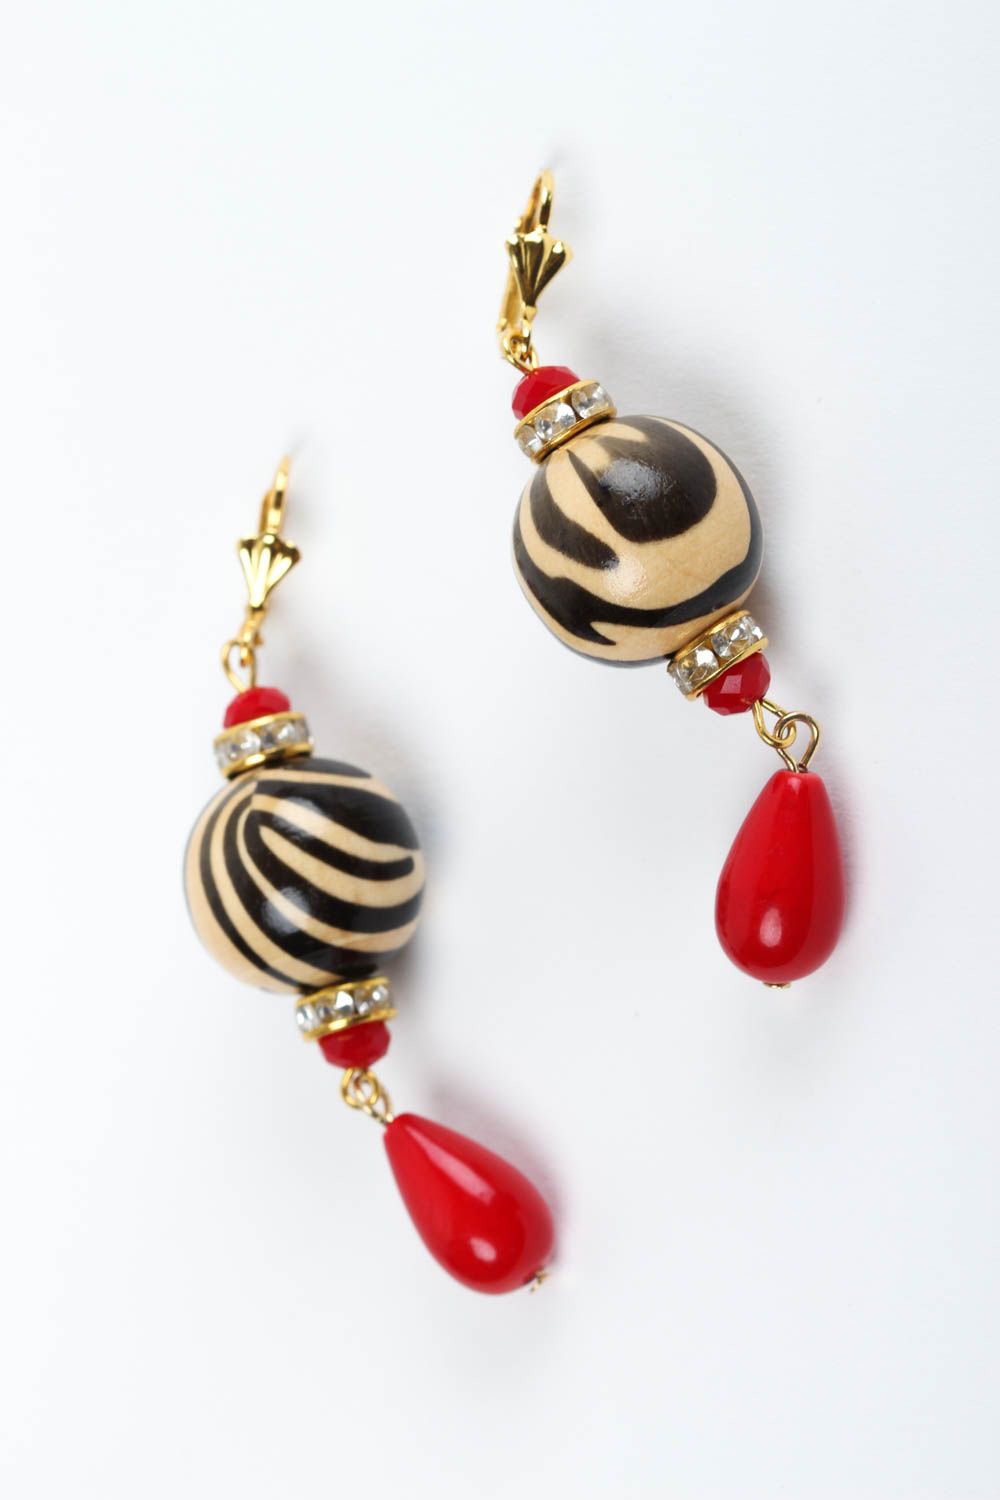 Handmade earrings designer earrings for girls earrings with charms gift for her photo 2